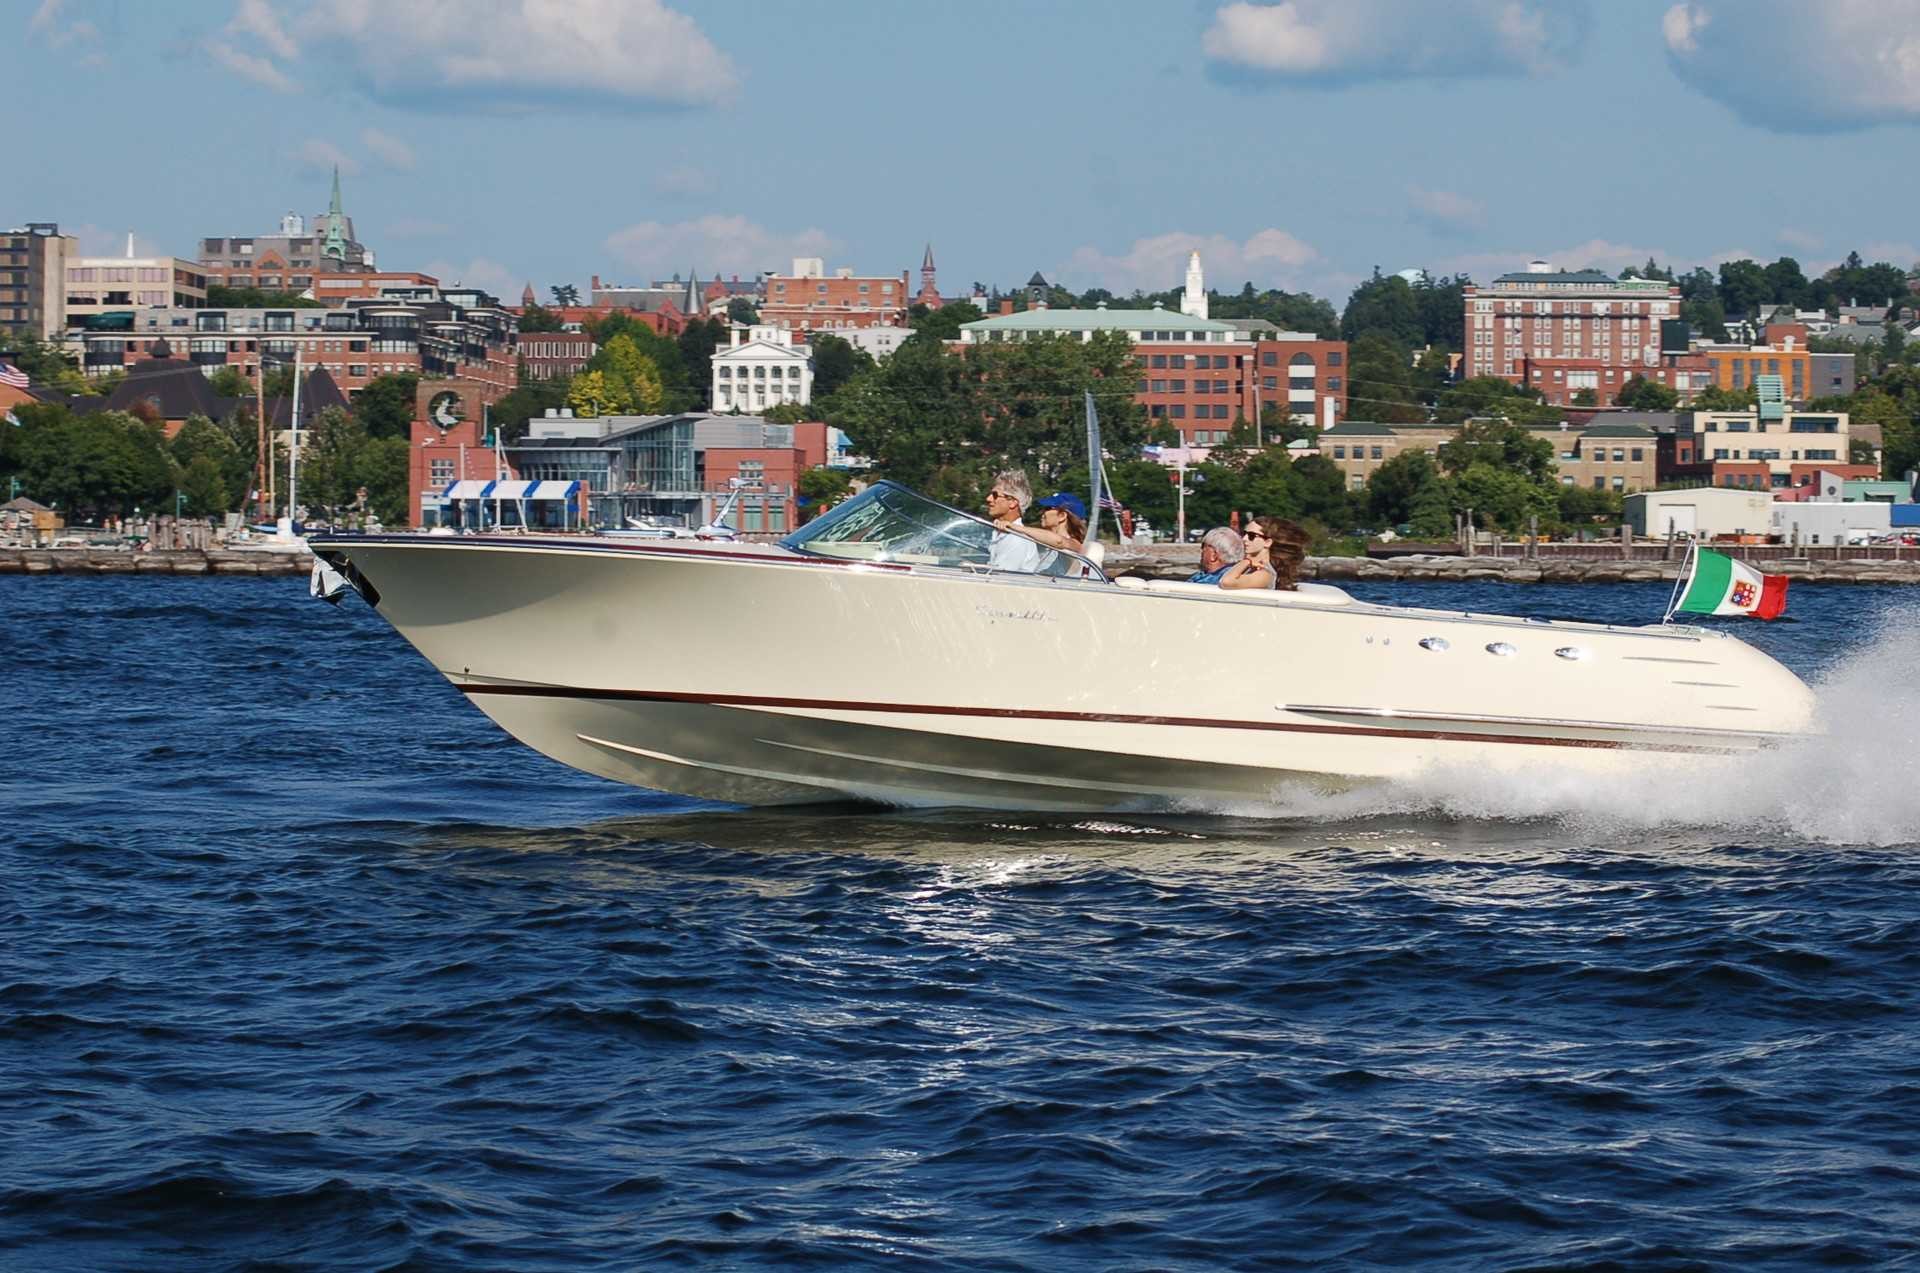 New Venezia 28 in Mahogany with Fiberglass Hull powered by 496 HO 425 HP